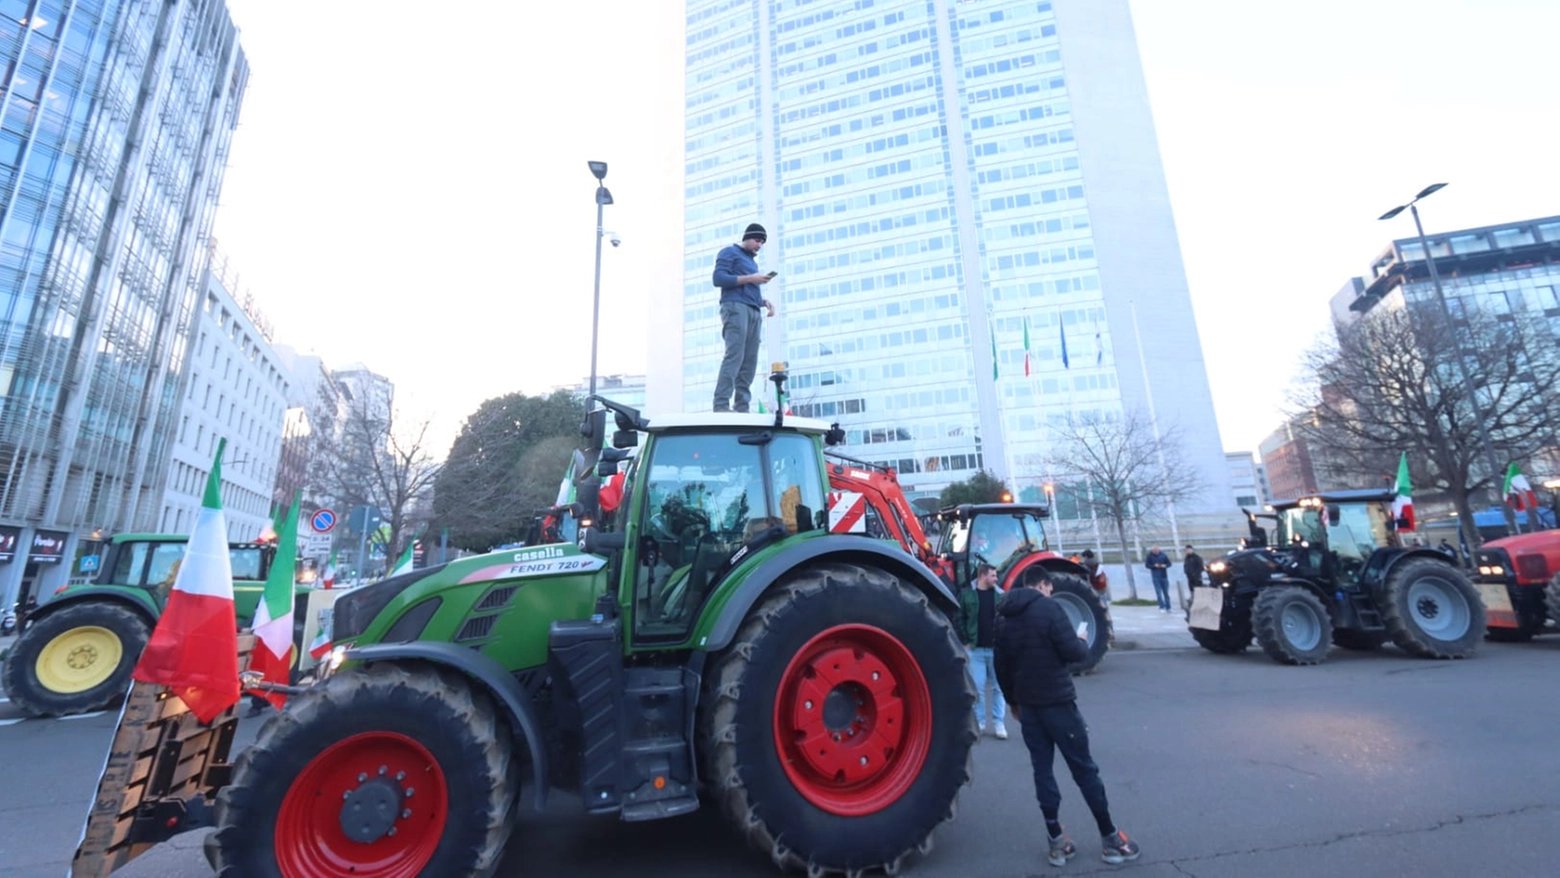 La protesta degli agricoltori davanti al Pirellone (Foto Salmoirago)